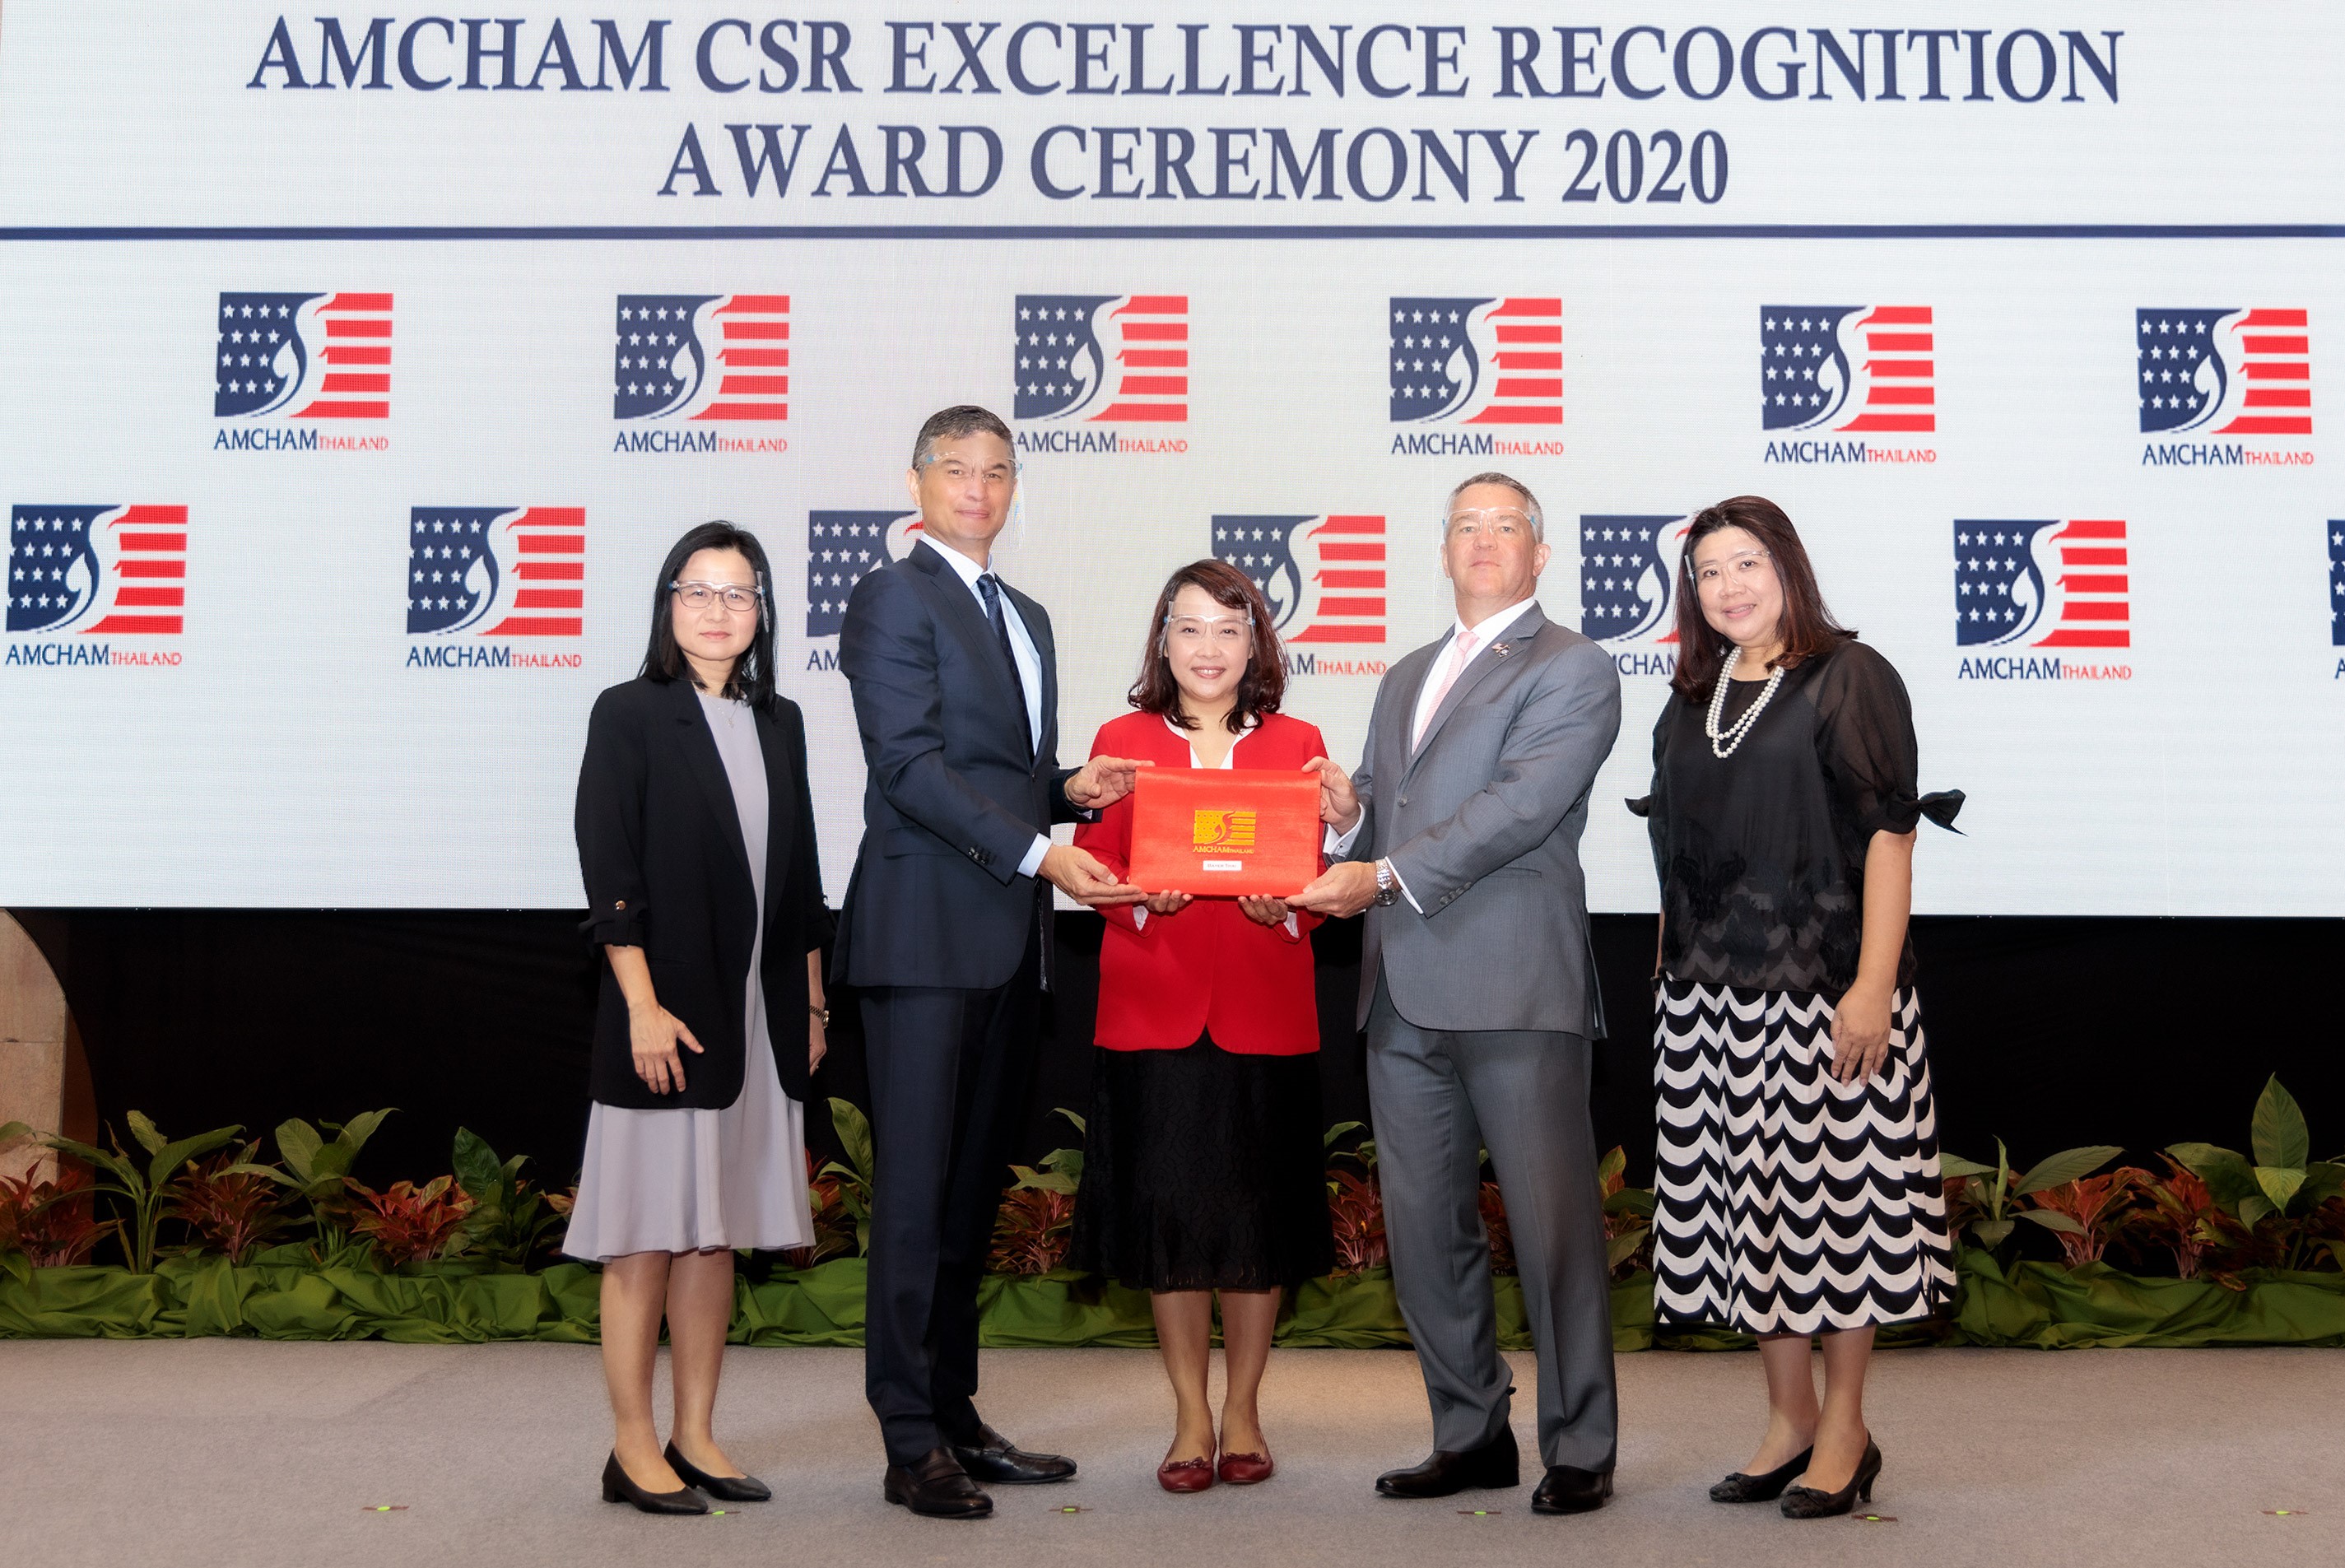 ไบเออร์ ไทย รับรางวัลดีเด่นด้านกิจกรรมที่มีความรับผิดชอบต่อสังคม ต่อเนื่องเป็นปีที่ 2 จากหอการค้าอเมริกันในประเทศไทย